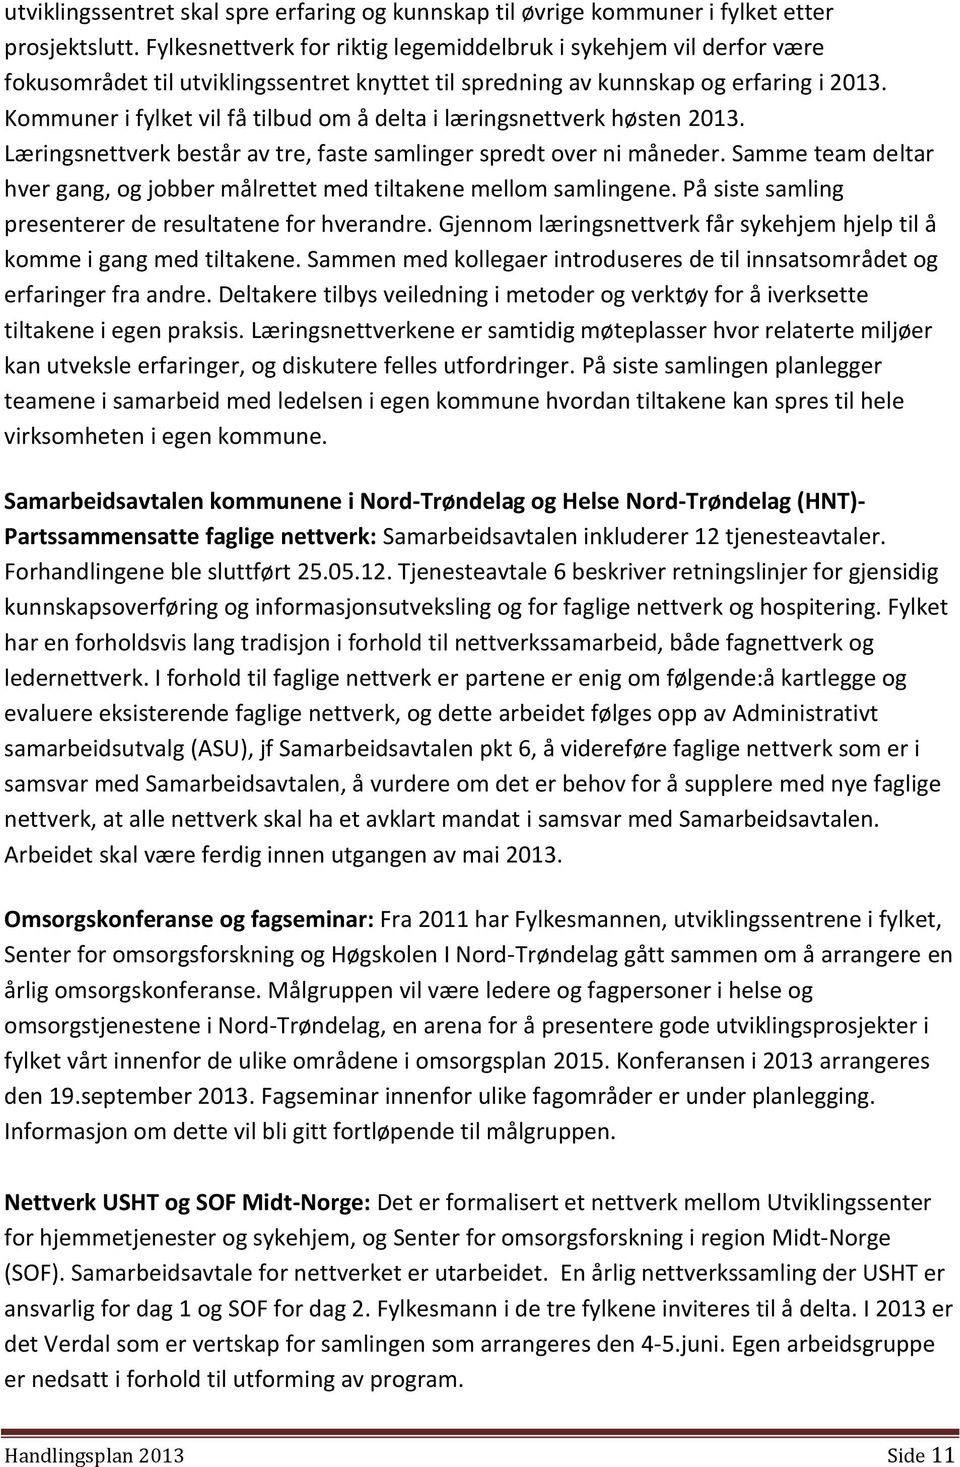 Kommuner i fylket vil få tilbud om å delta i læringsnettverk høsten 2013. Læringsnettverk består av tre, faste samlinger spredt over ni måneder.